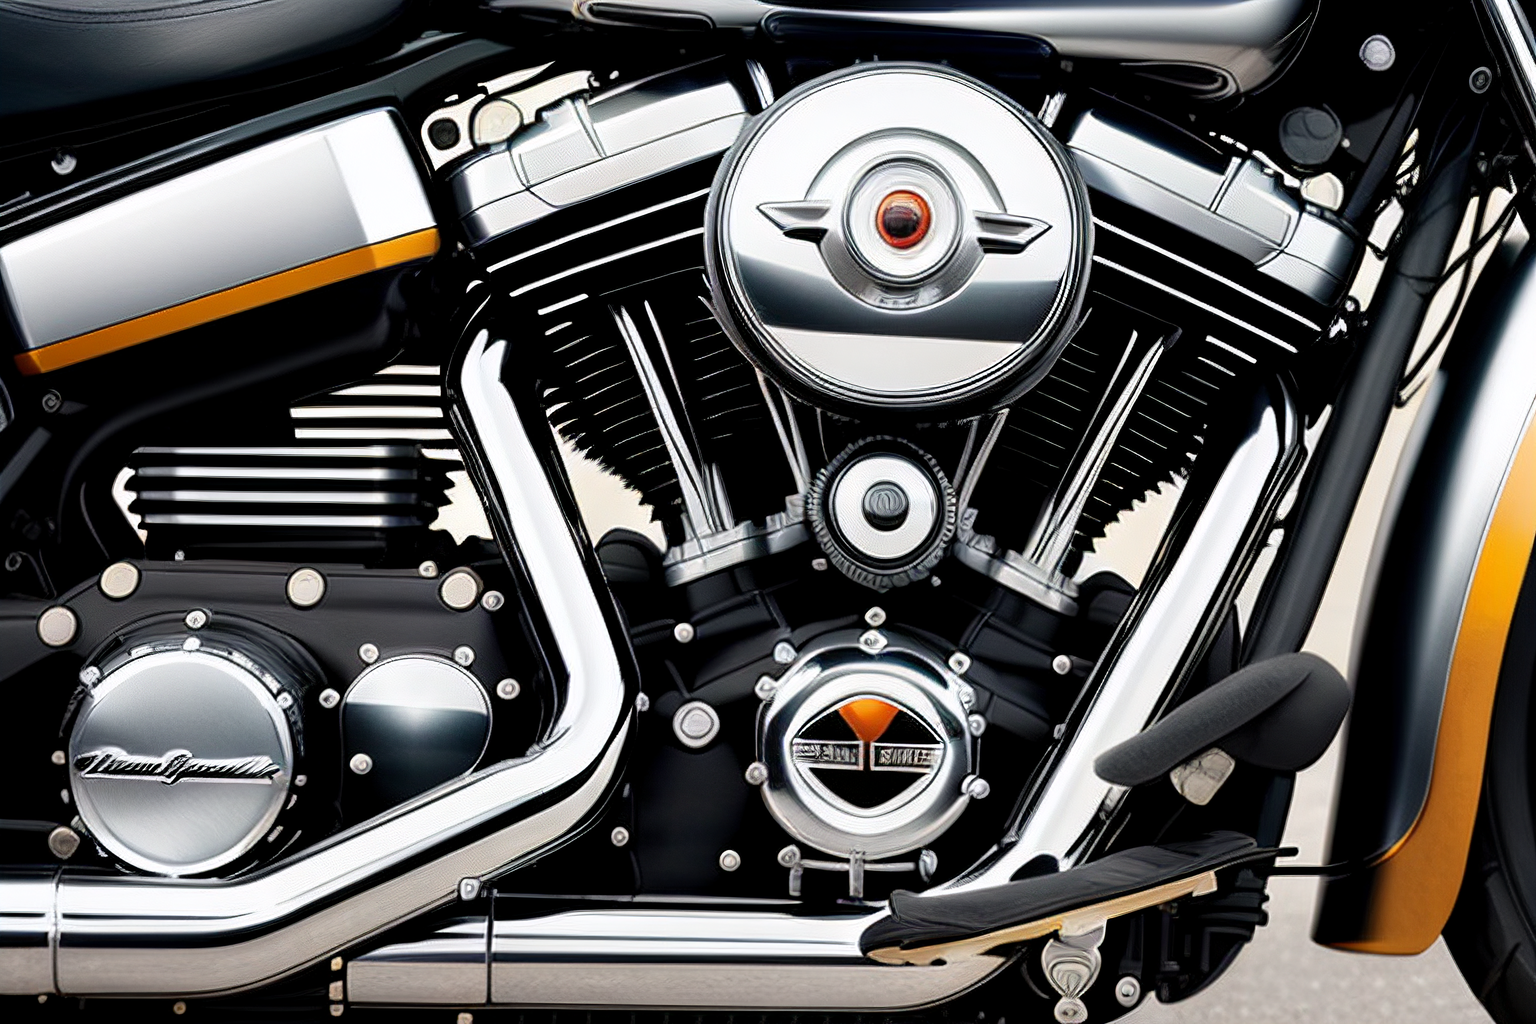 Harley Davidson 5 Speed Transmission Problems: Tips